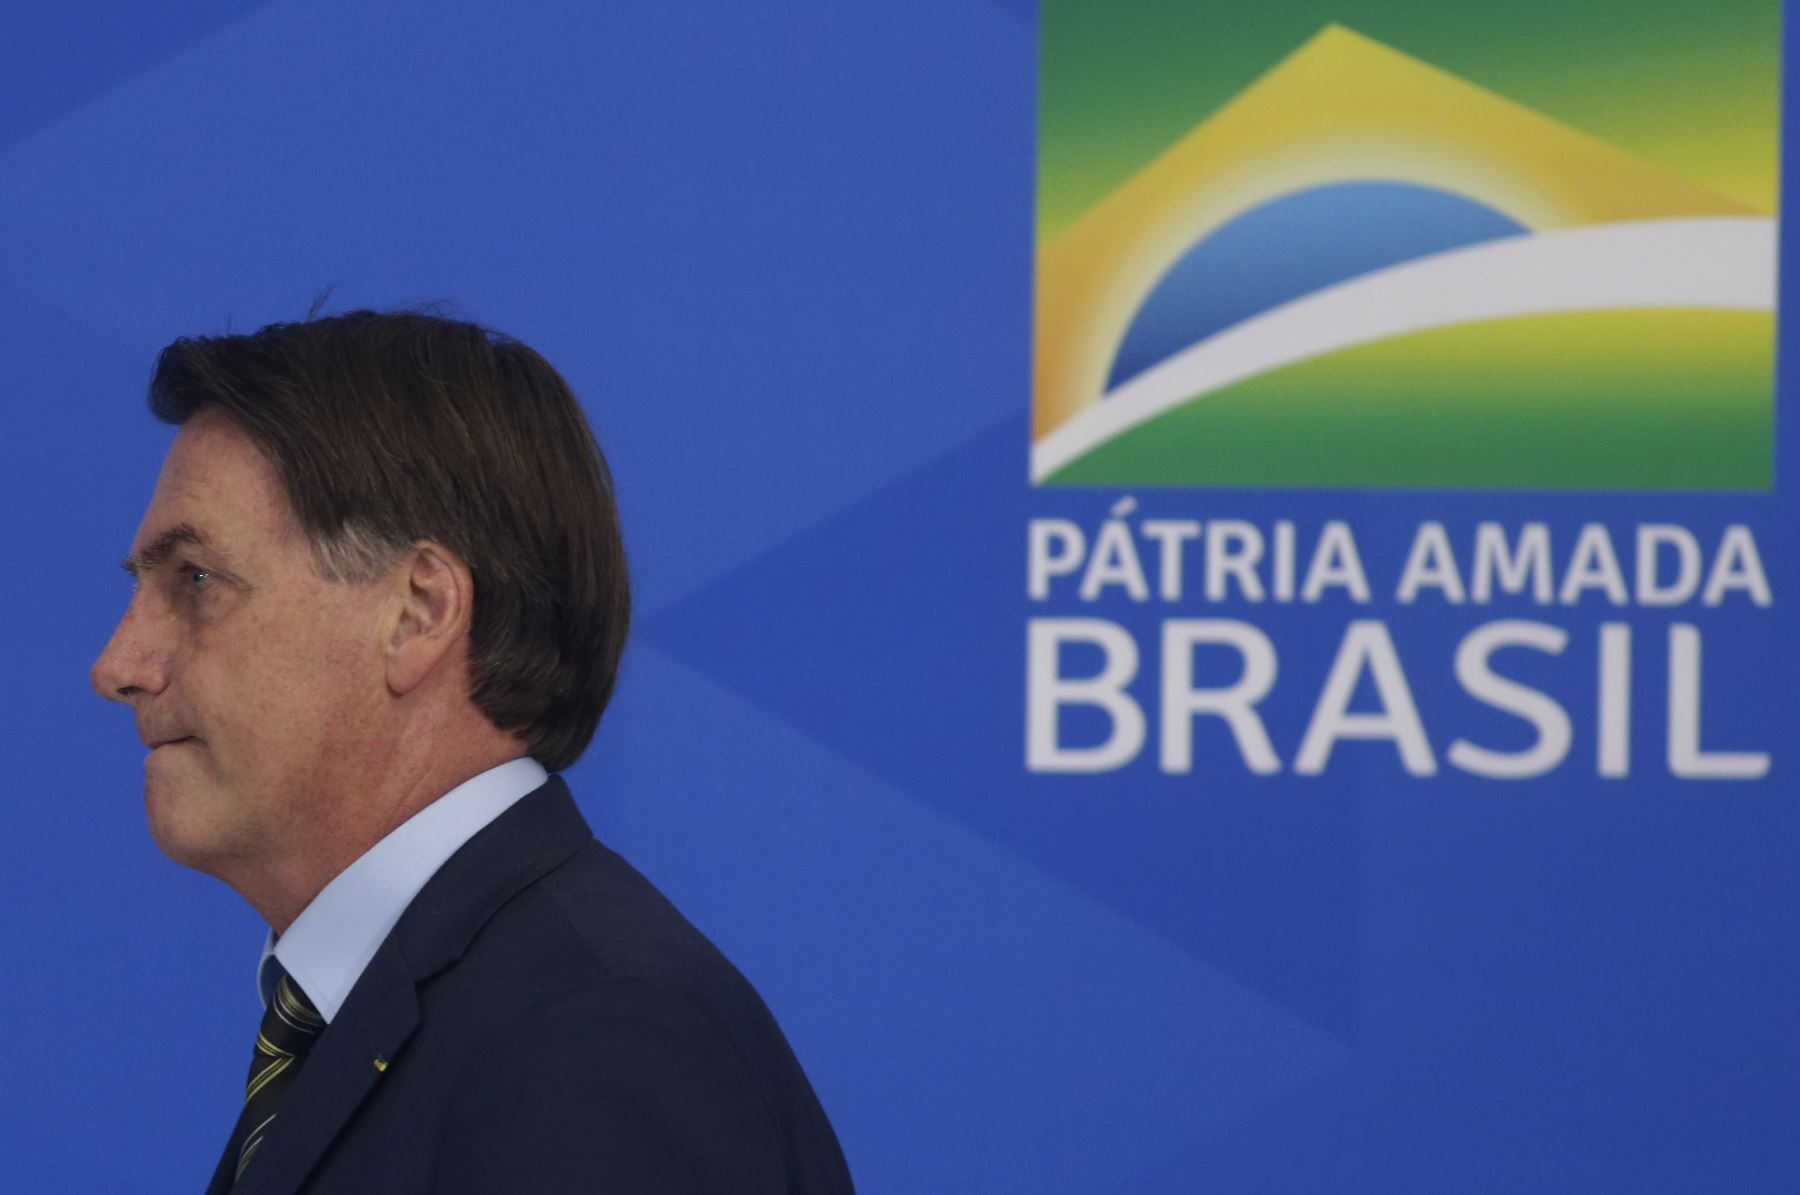 Bolsonaro, quien este domingo dio un paseo por Brasilia y saludó a decenas de personas, ha minimizado la pandemia, ha calificado al coronavirus de "gripecita". Foto: XInhua